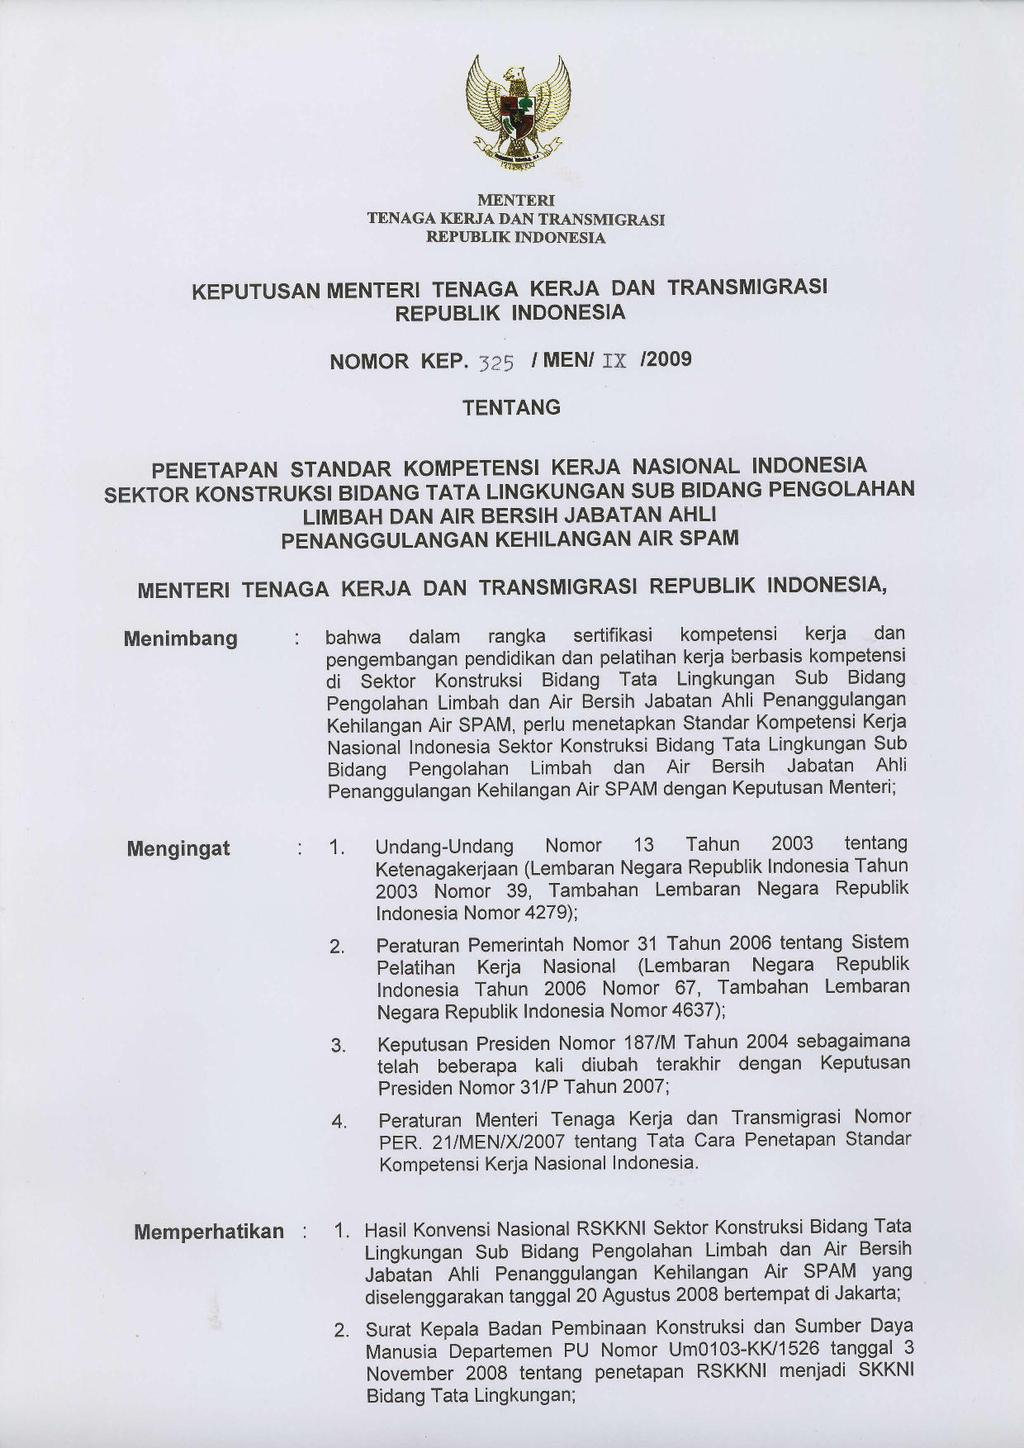 TENAGA KERfffi lloonr*.*., REPIJBLIK INDONESIA KEPUTUSAN MENTERI TENAGA KERJA DAN TRANSMIGRASI REPUBLIK INDONESIA NOMOR KEP.